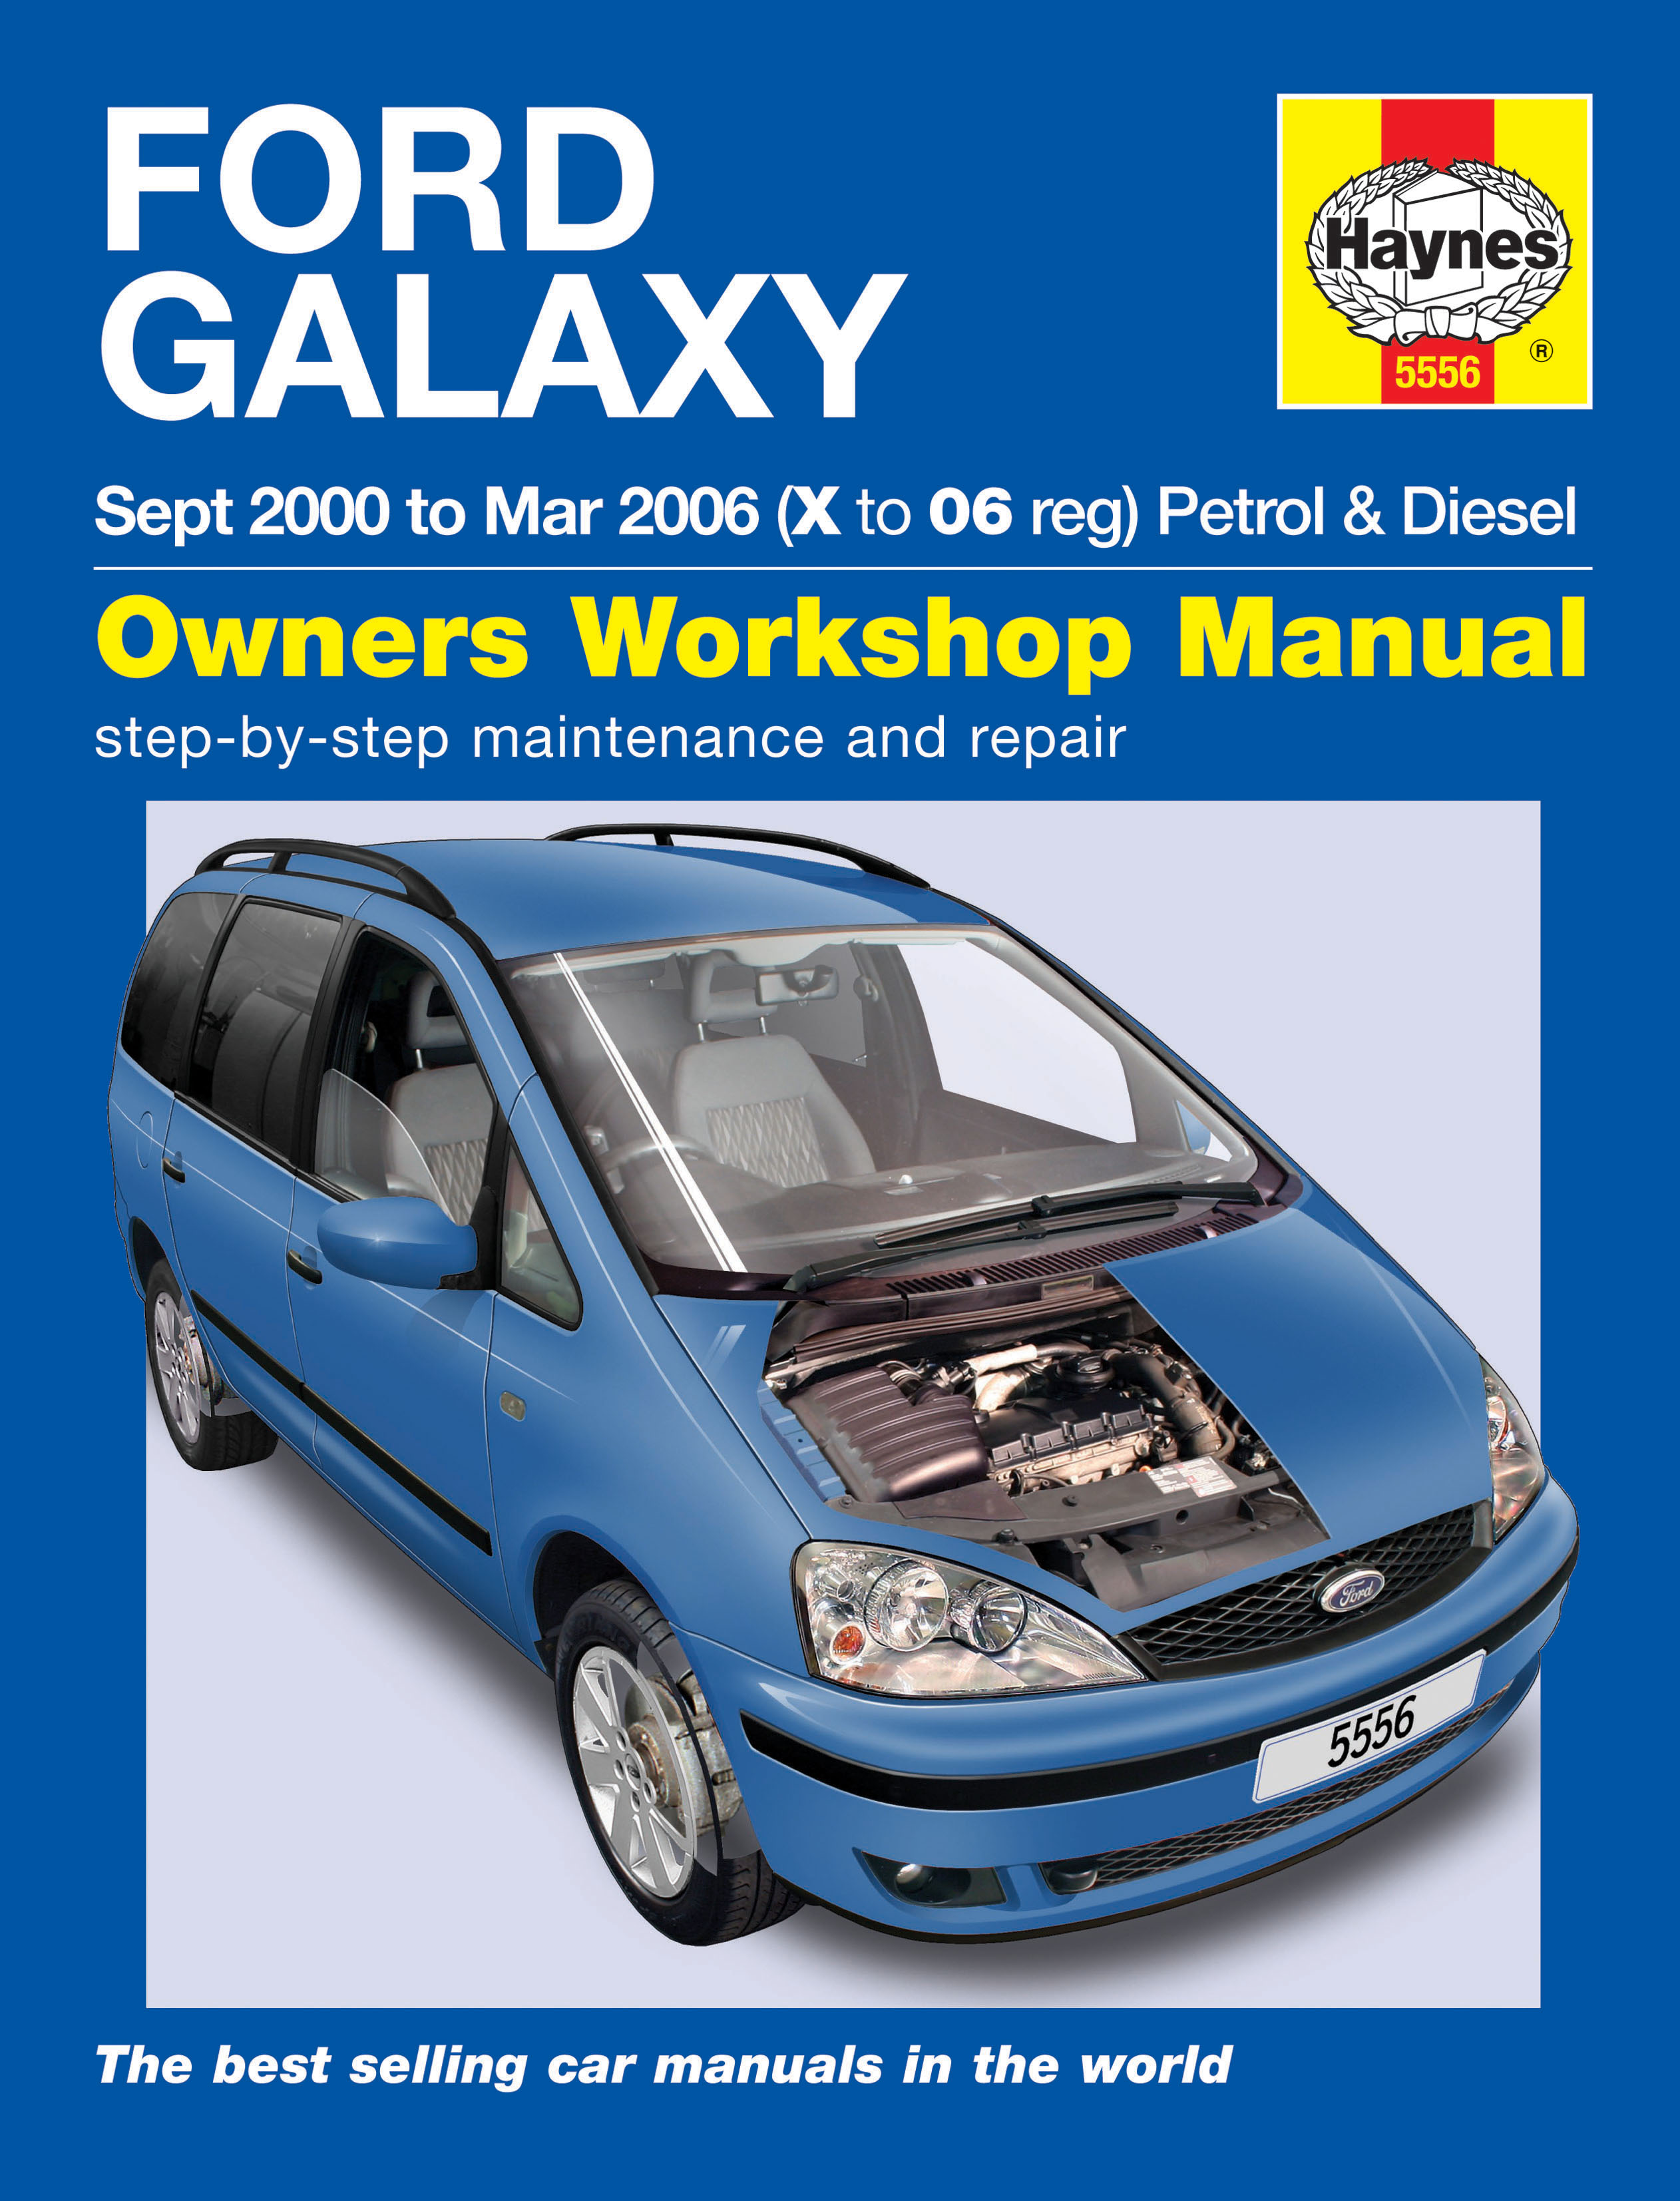 Ford galaxy haynes manual #5